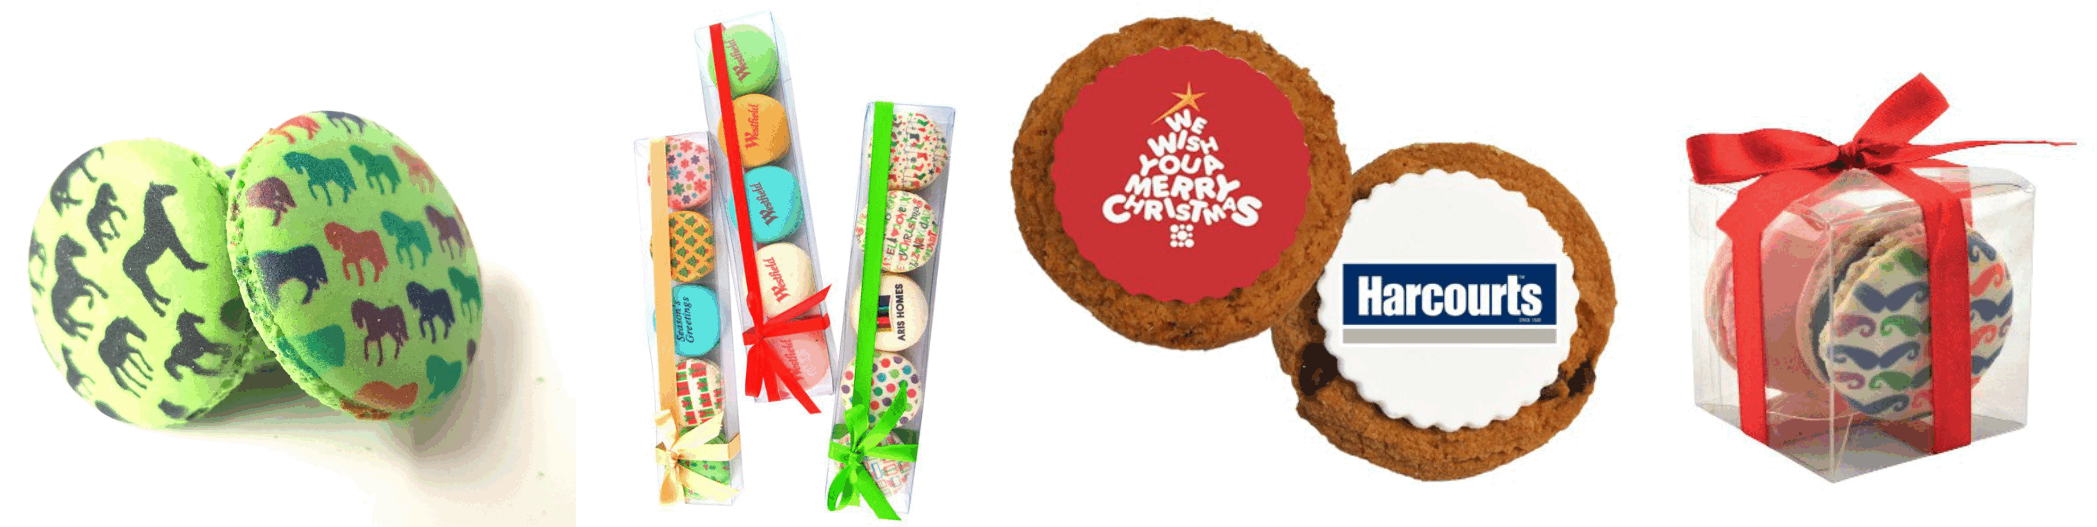 Christmas Gift Cookie Printing Brisbane - Corporate Gifts Custom Printed